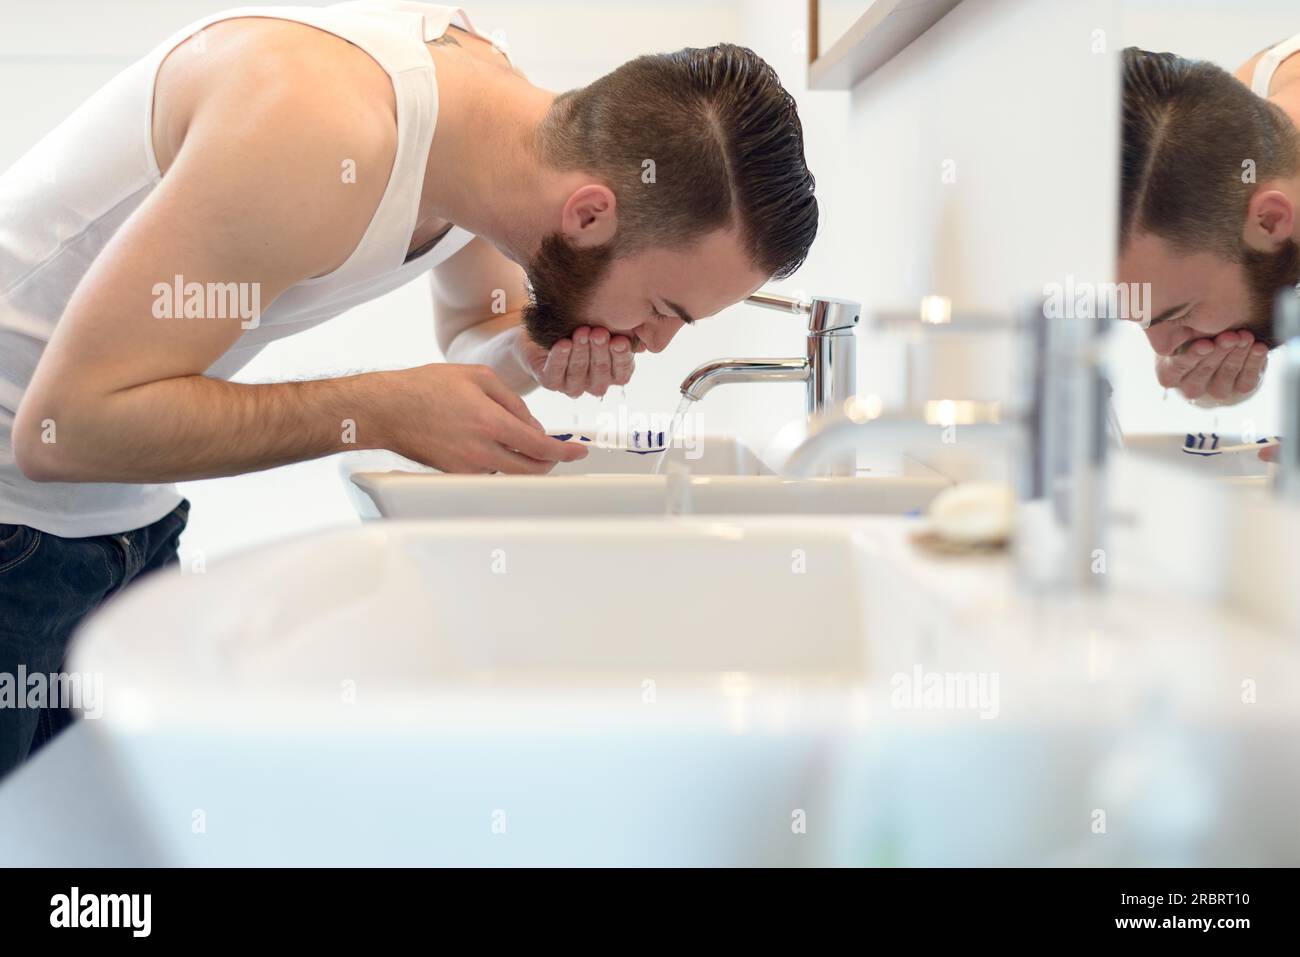 Hombre enjuagando su cepillo de dientes con agua corriente del grifo en el lavabo después de afeitarse por encima de su barba para limpiar su apariencia, vista lateral Foto de stock